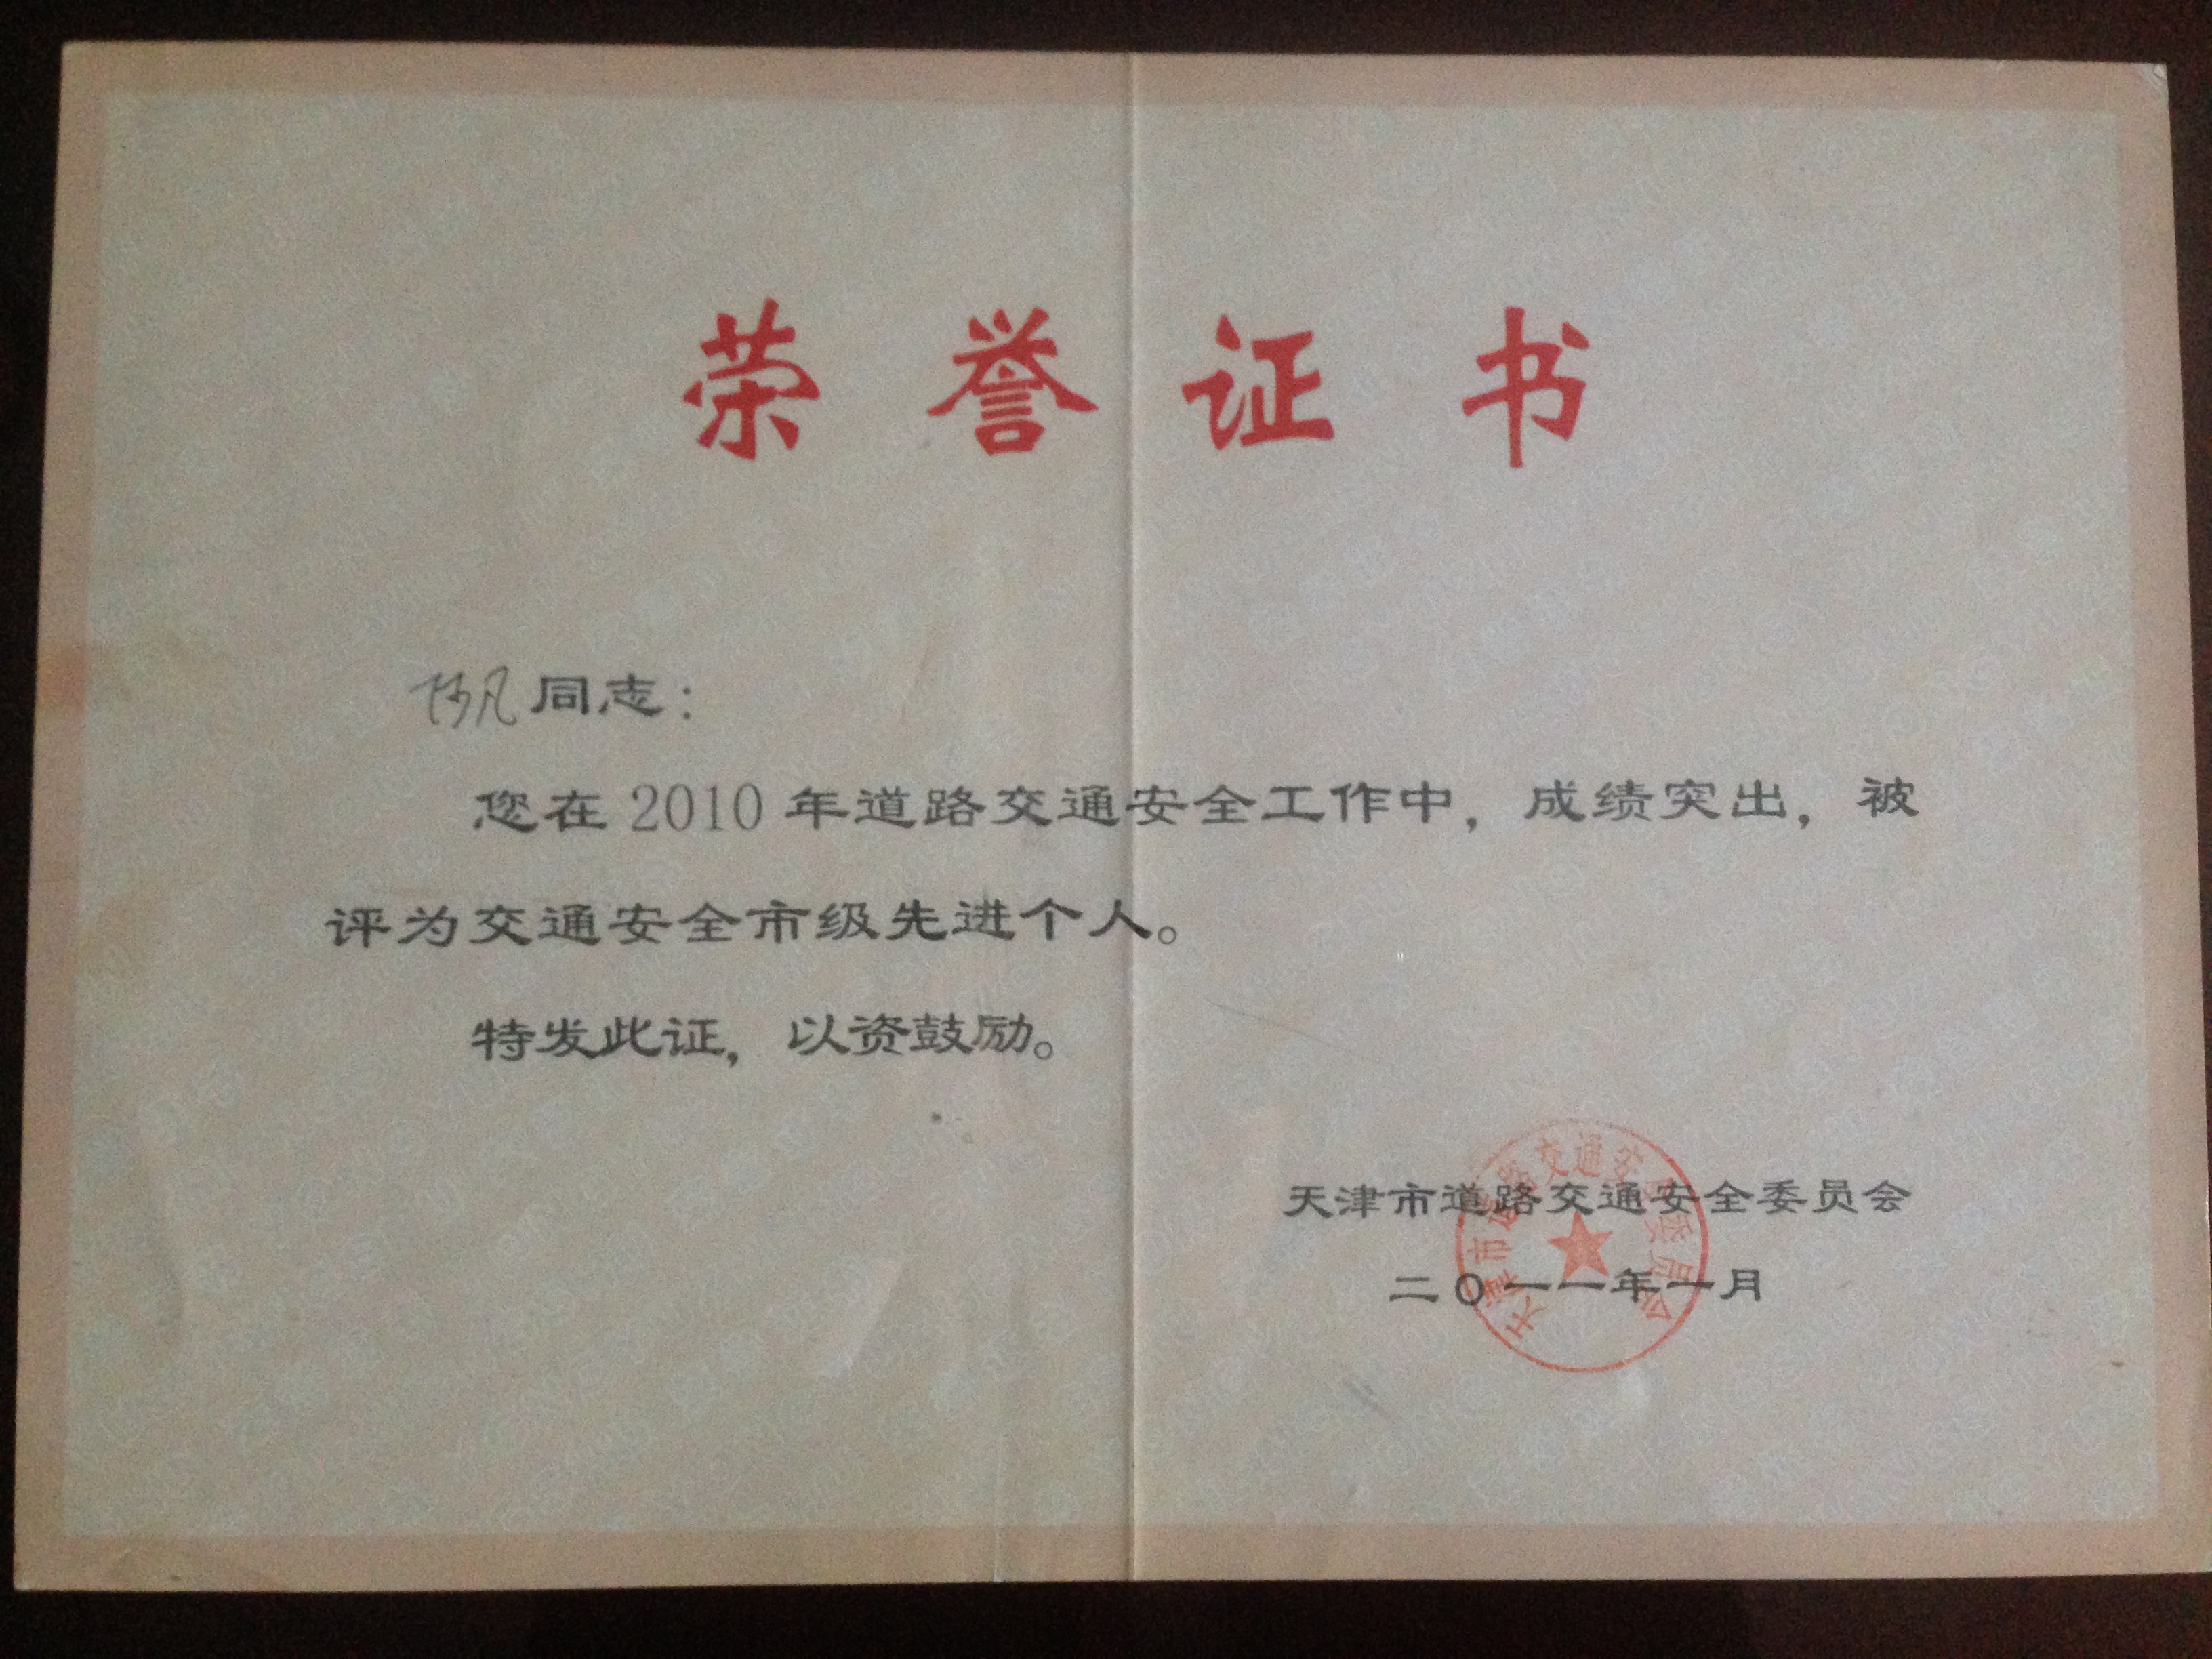 天津班车租赁公司及法人荣誉证书(图18)